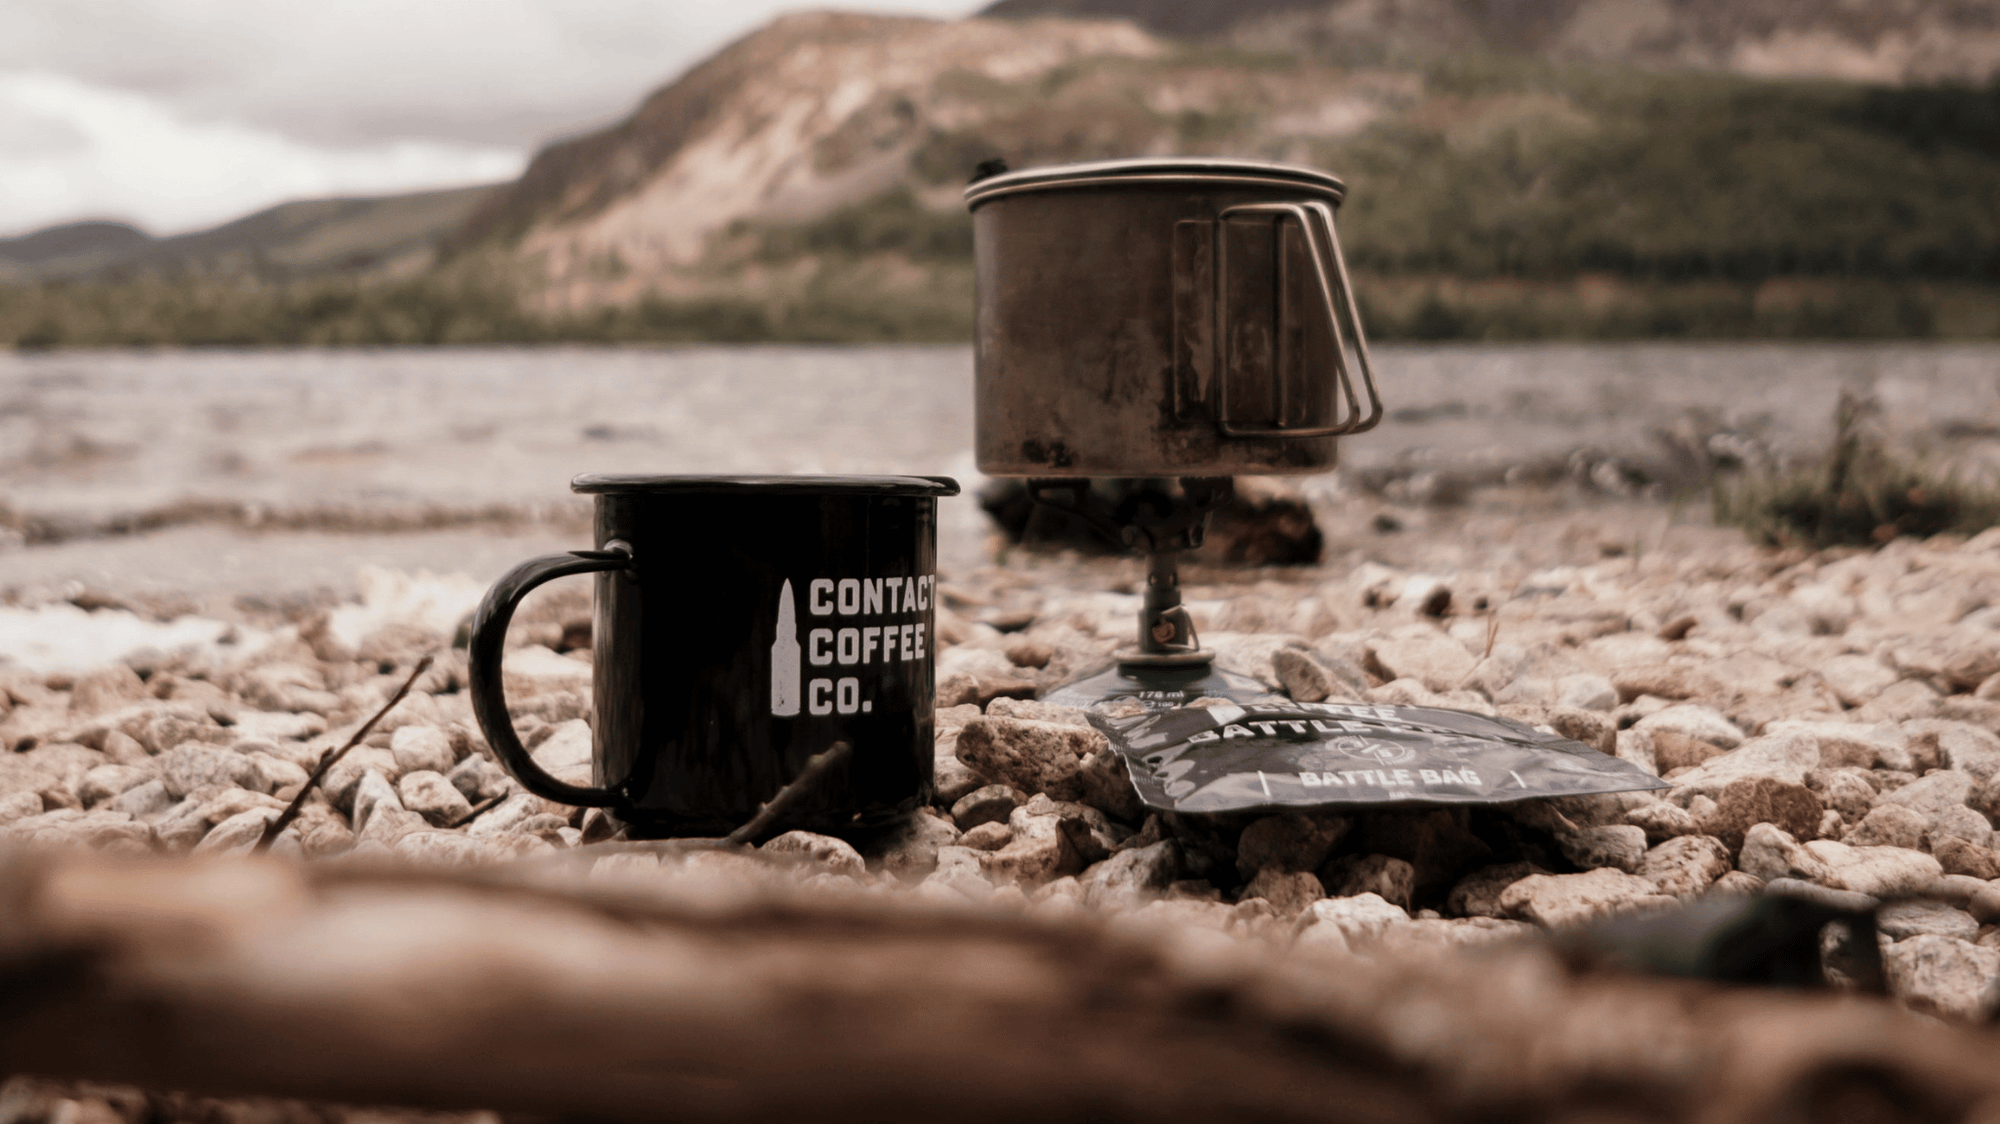 coffee kit next to a mountain